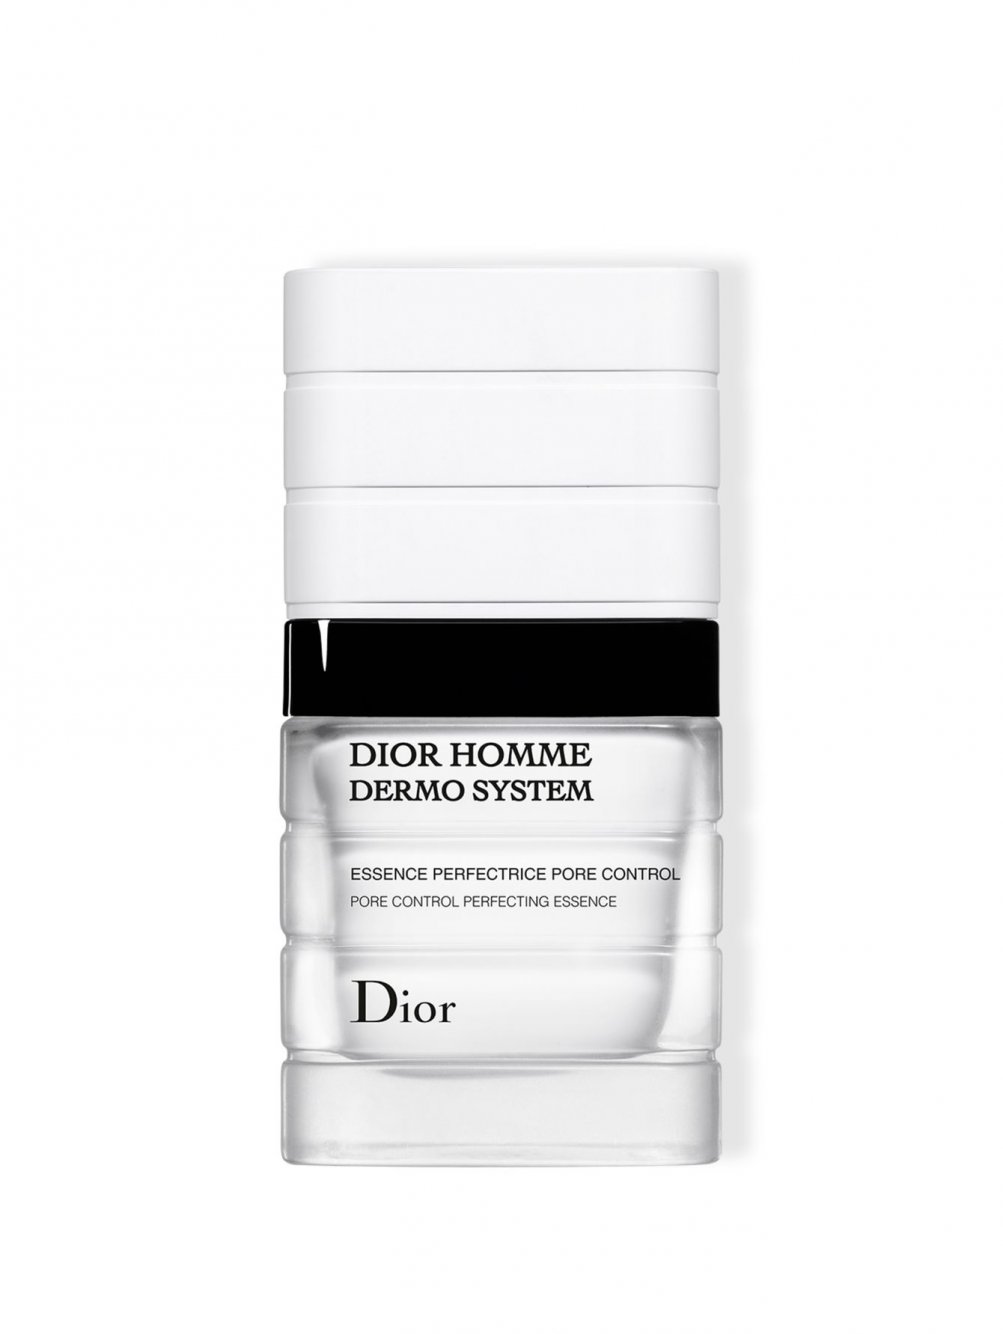 ❀ Dior Homme Dermo System 